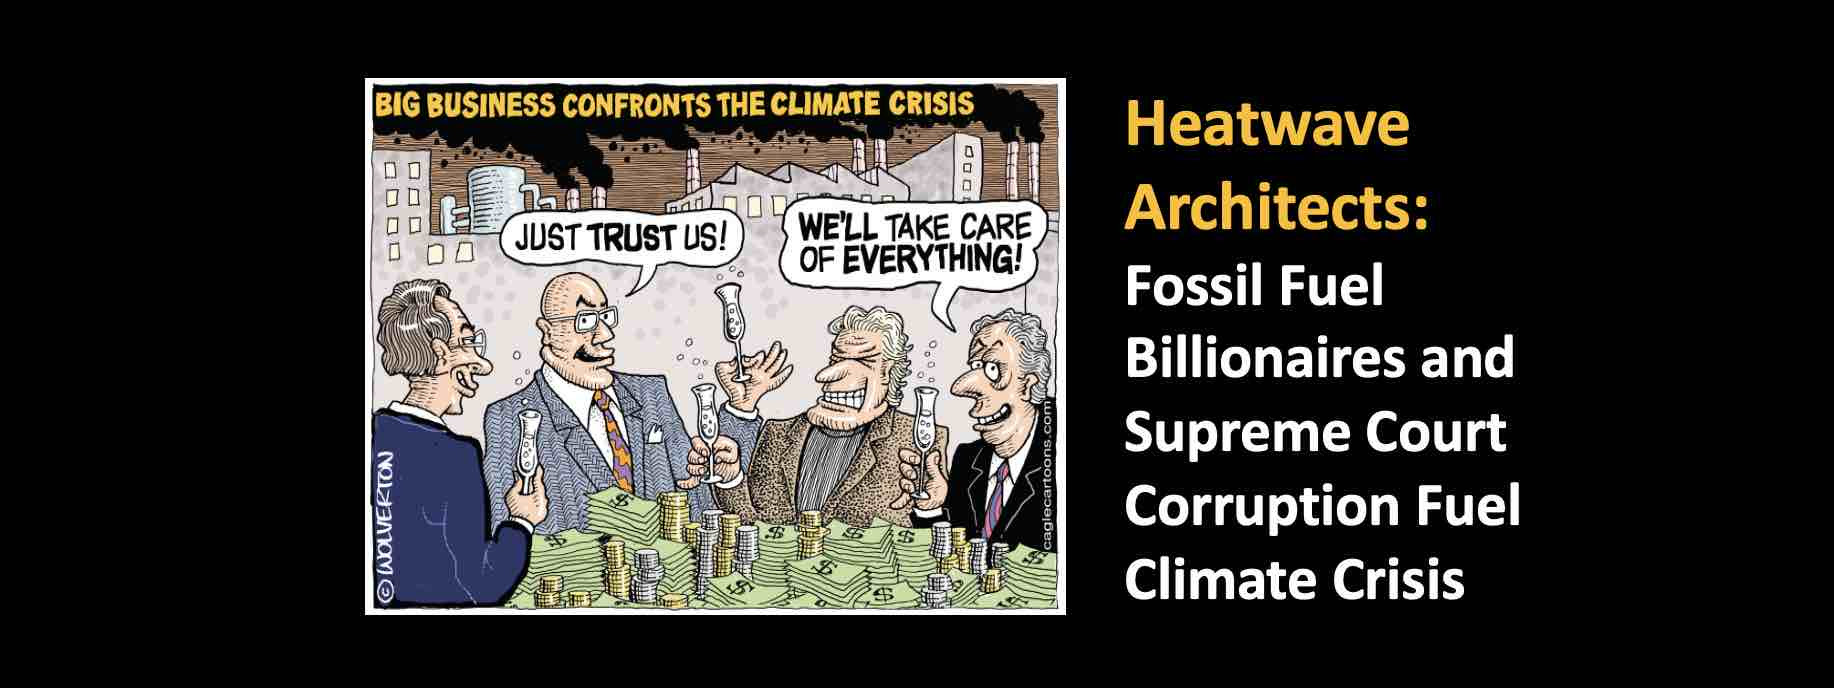 Heatwave Architects: Fossil Fuel Billionaires and Supreme Court Corruption Fuel Climate Crisis